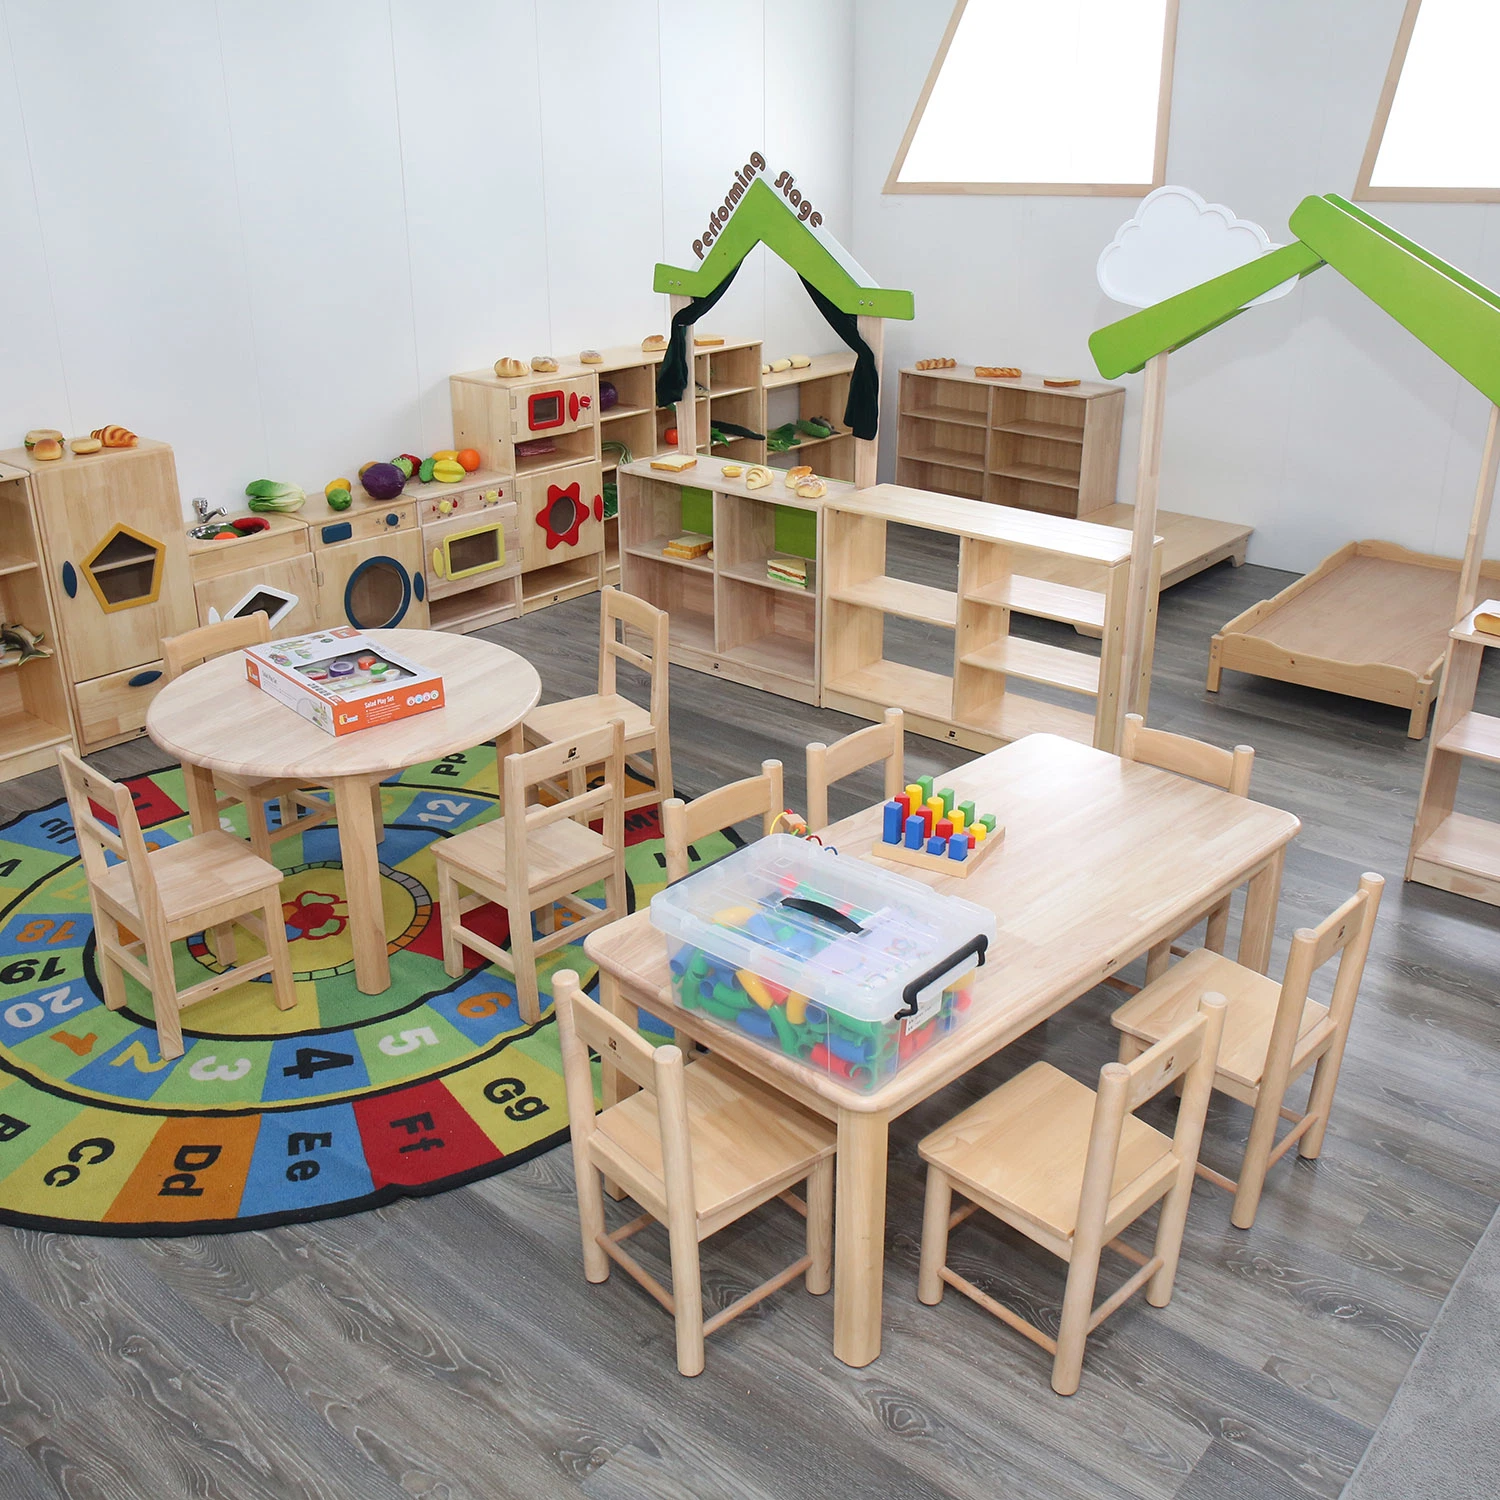 Kinder Holzstuhl, Schüler Tischstuhl, Kind Schreibtischstuhl, Schule Klassenzimmer Stuhl, Baby Moderne Möbel, Vorschule und Kinderstuhl, Möbel Stuhl